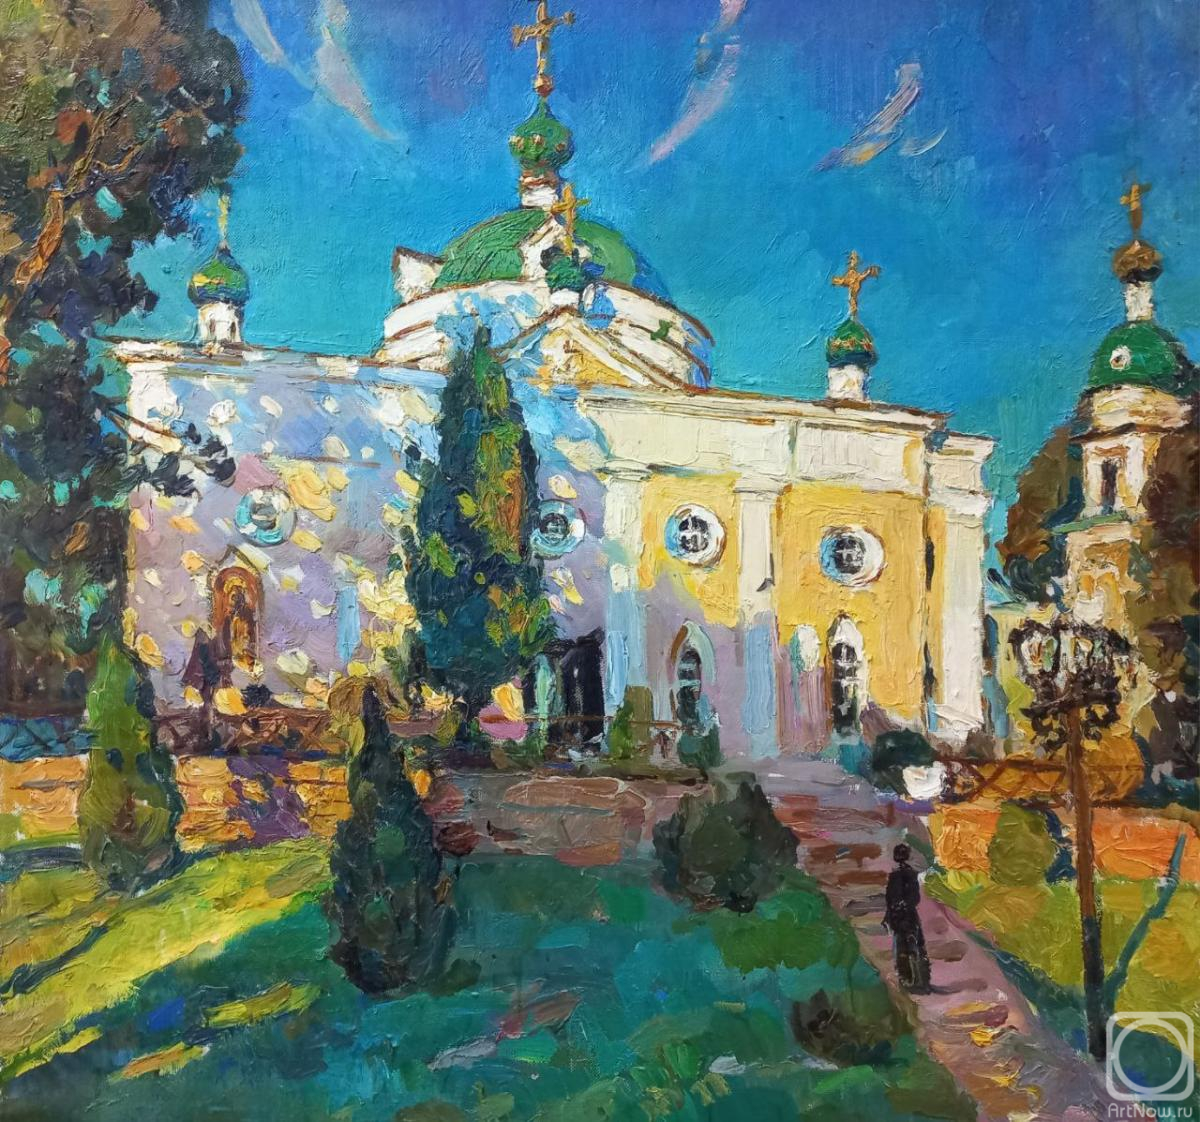 Sorokina Olga. St. Nicholas Church in the Yusupov estate in the village of Rakitnoye